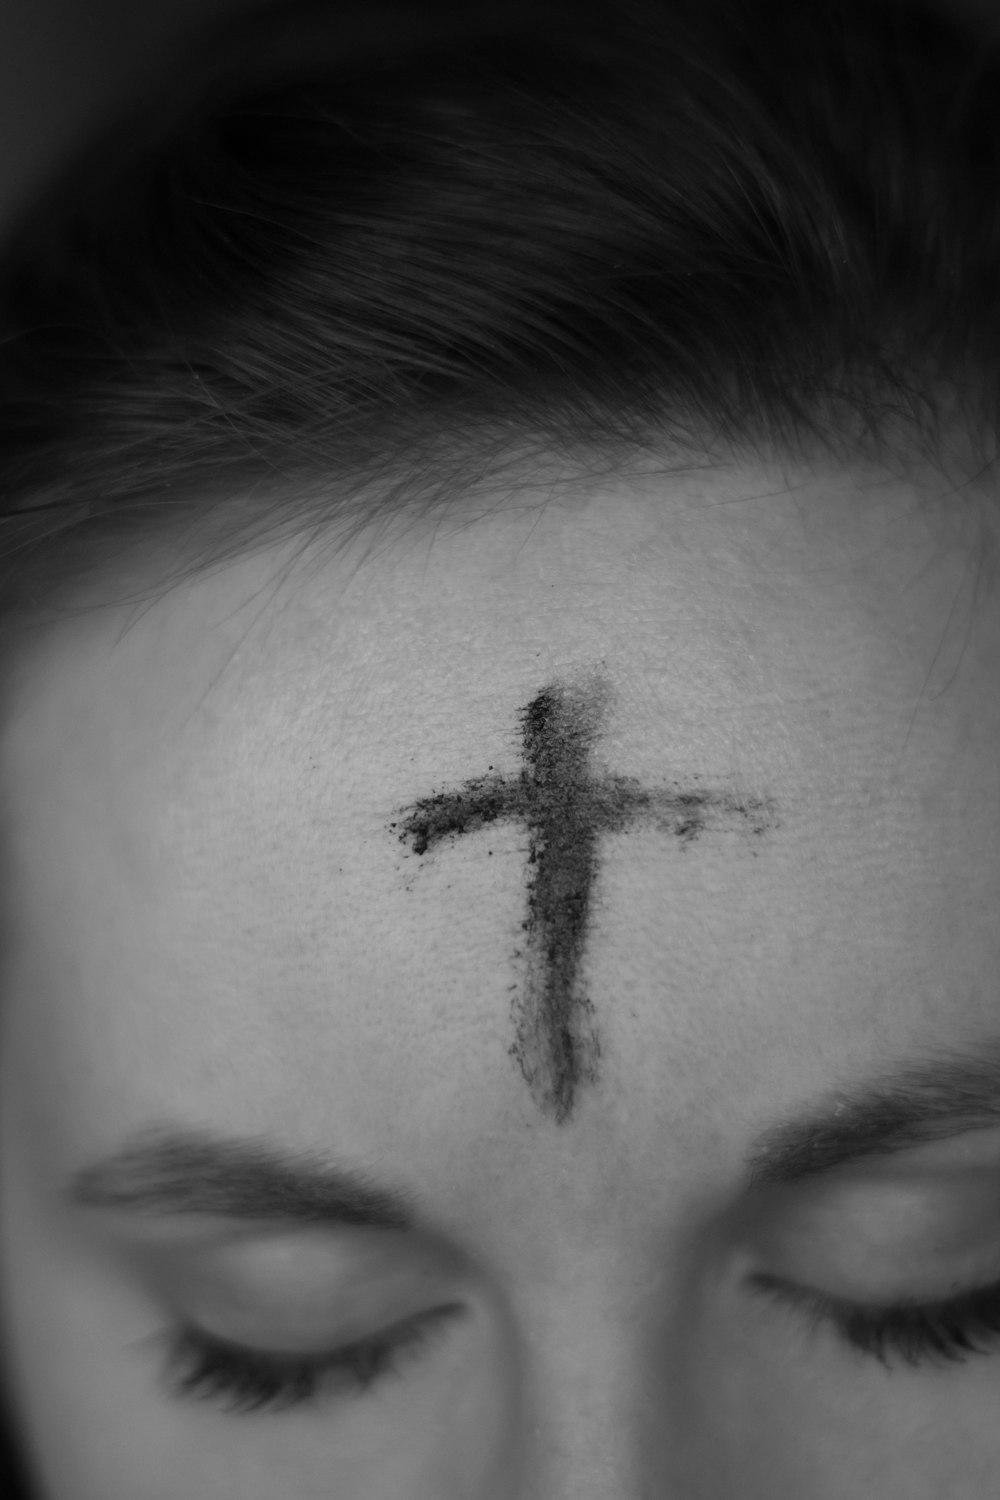 croce sulla fronte della persona